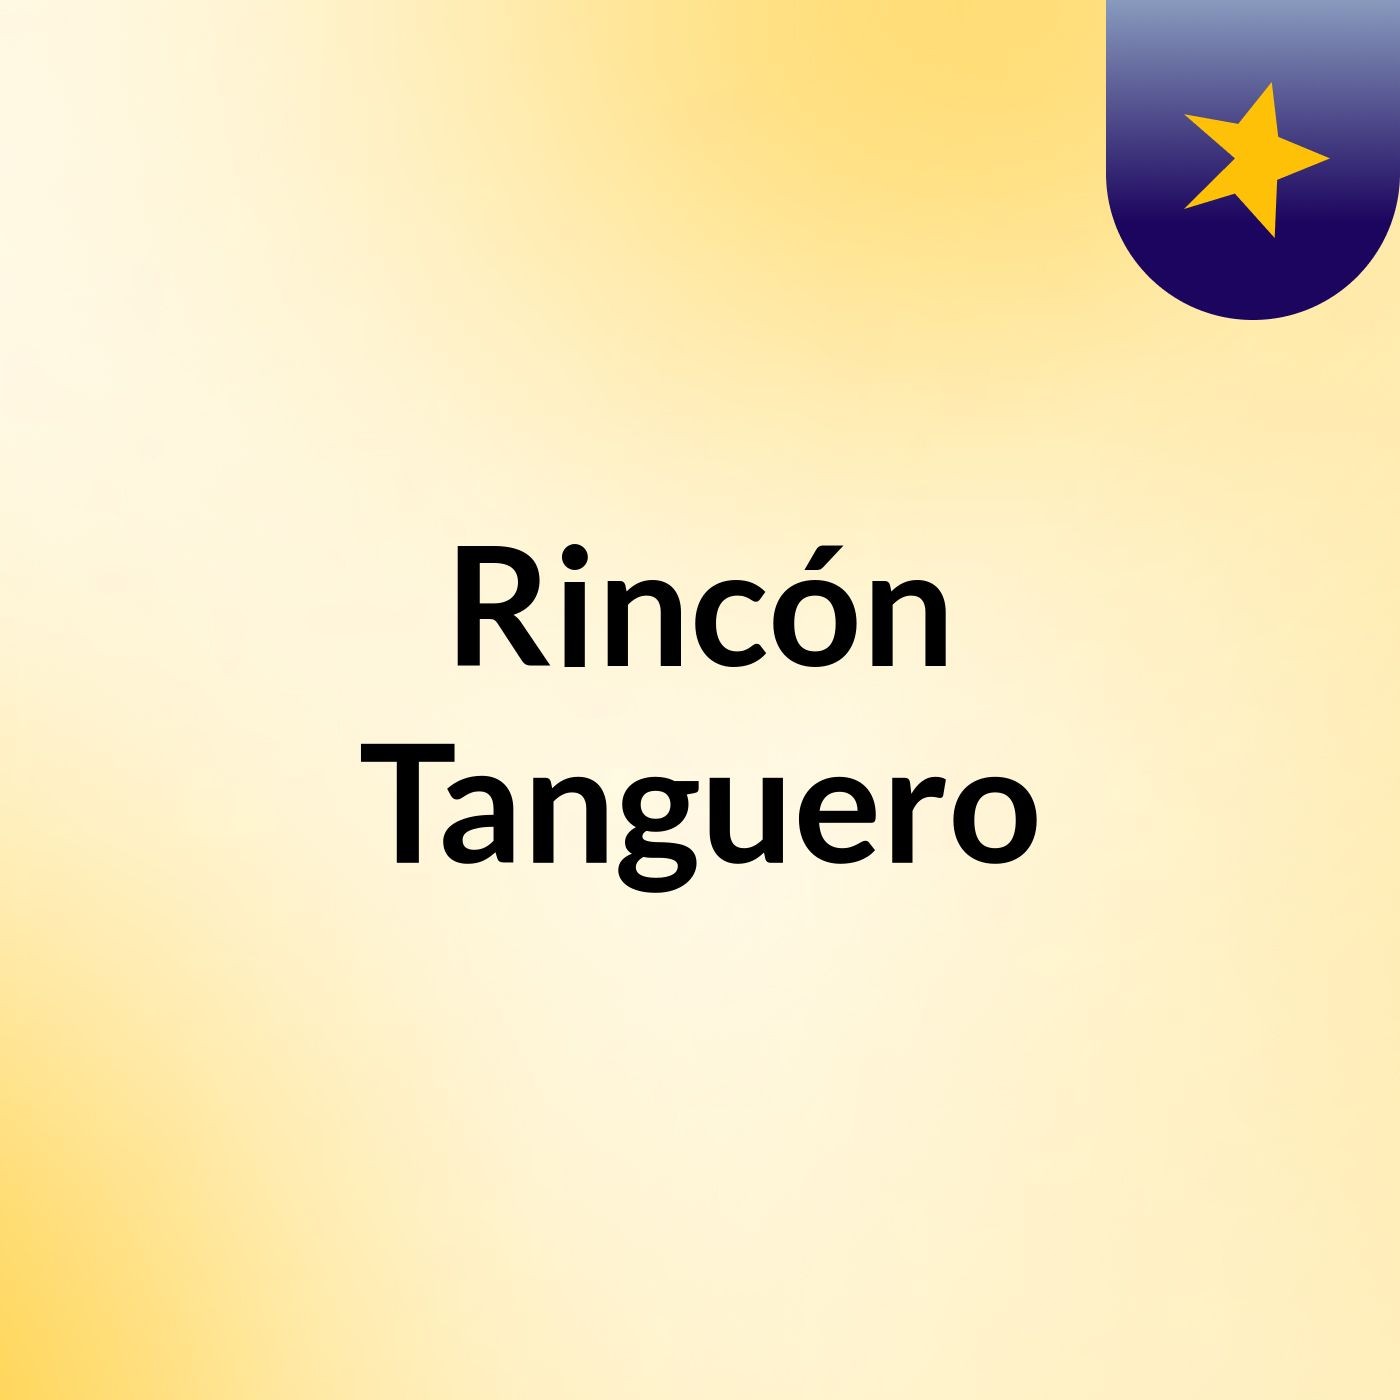 Rincón Tanguero